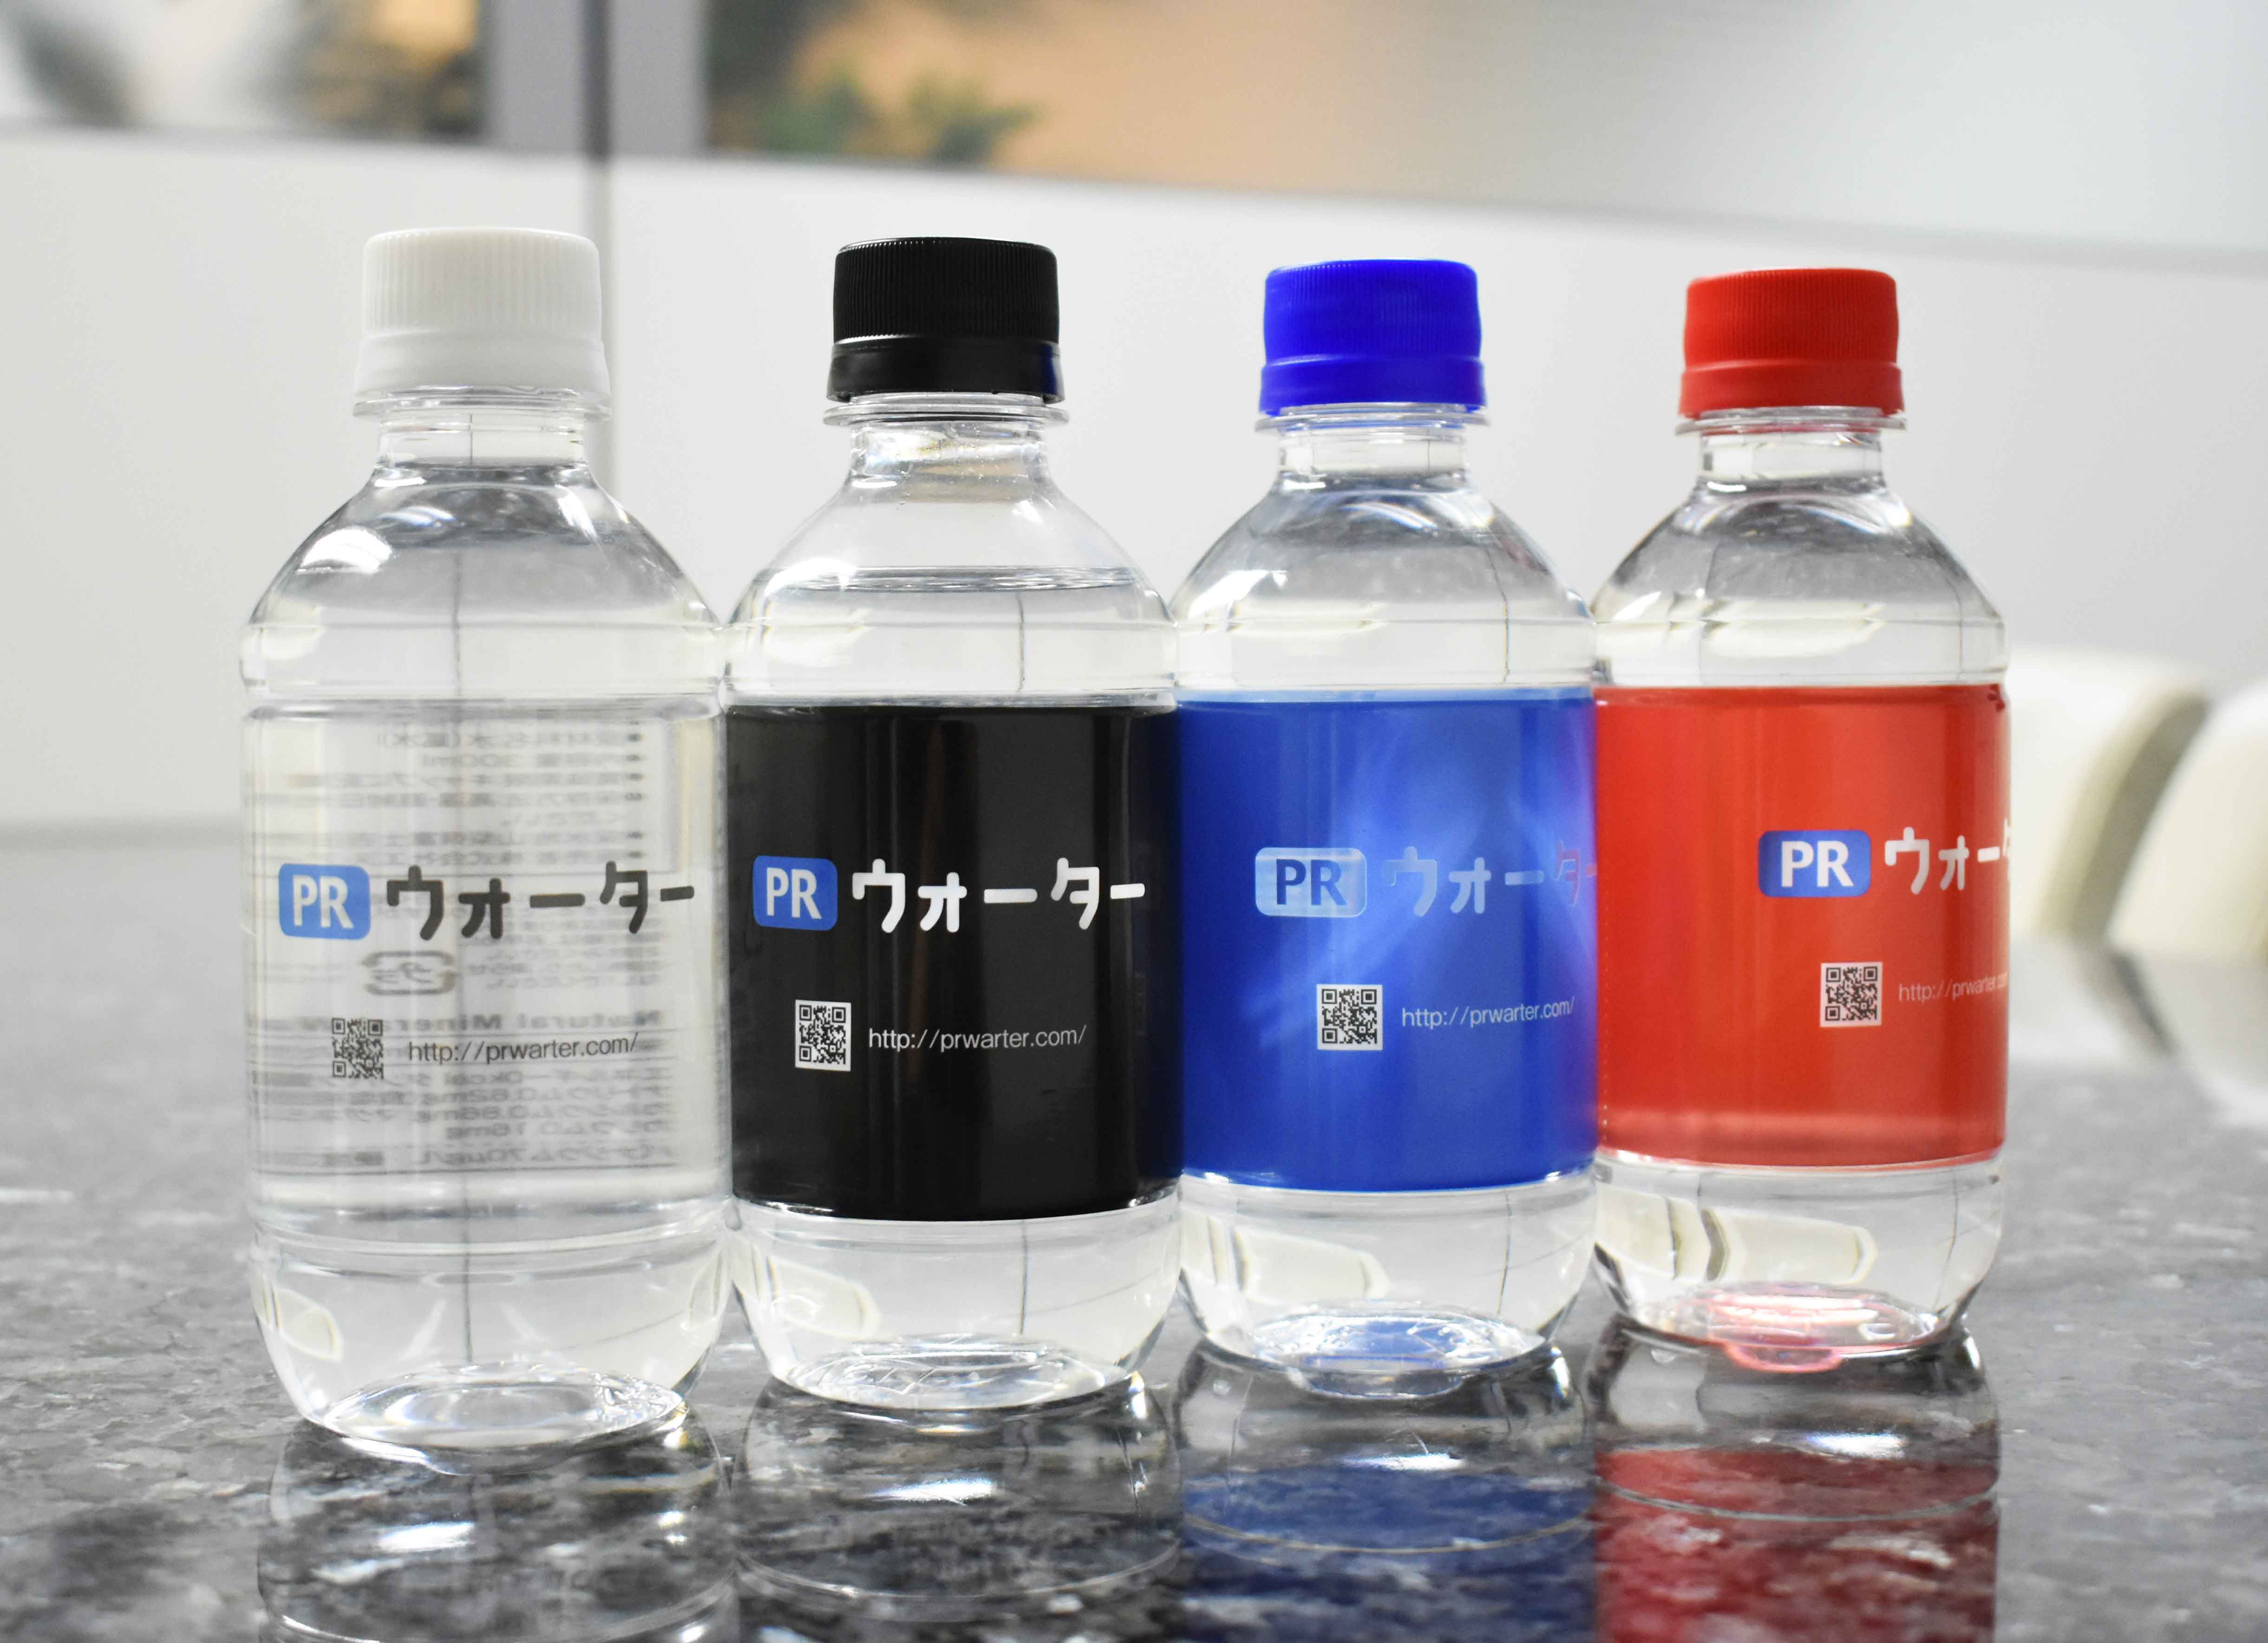 広報 総務必見 オリジナルペットボトル水がit企業でブームの理由